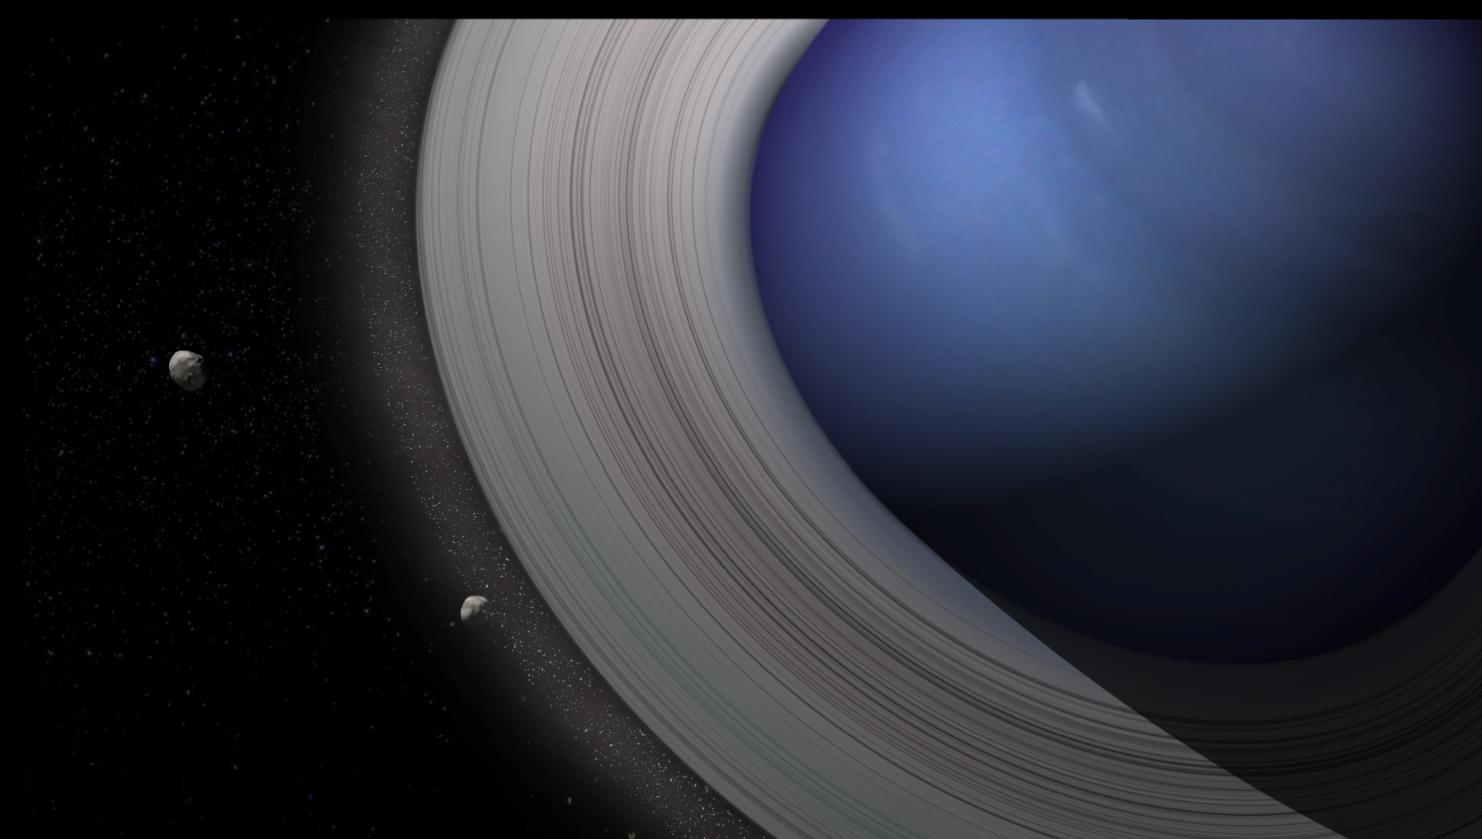 Image d'artiste de la planète Neptune entourée d'anneaux denses&nbsp;à partir desquels se sont formés 2 satellites. Même s'ils ne sont plus très&nbsp;visibles aujourd'hui, Neptune possède encore des anneaux.&nbsp;© SAp,&nbsp;Animea